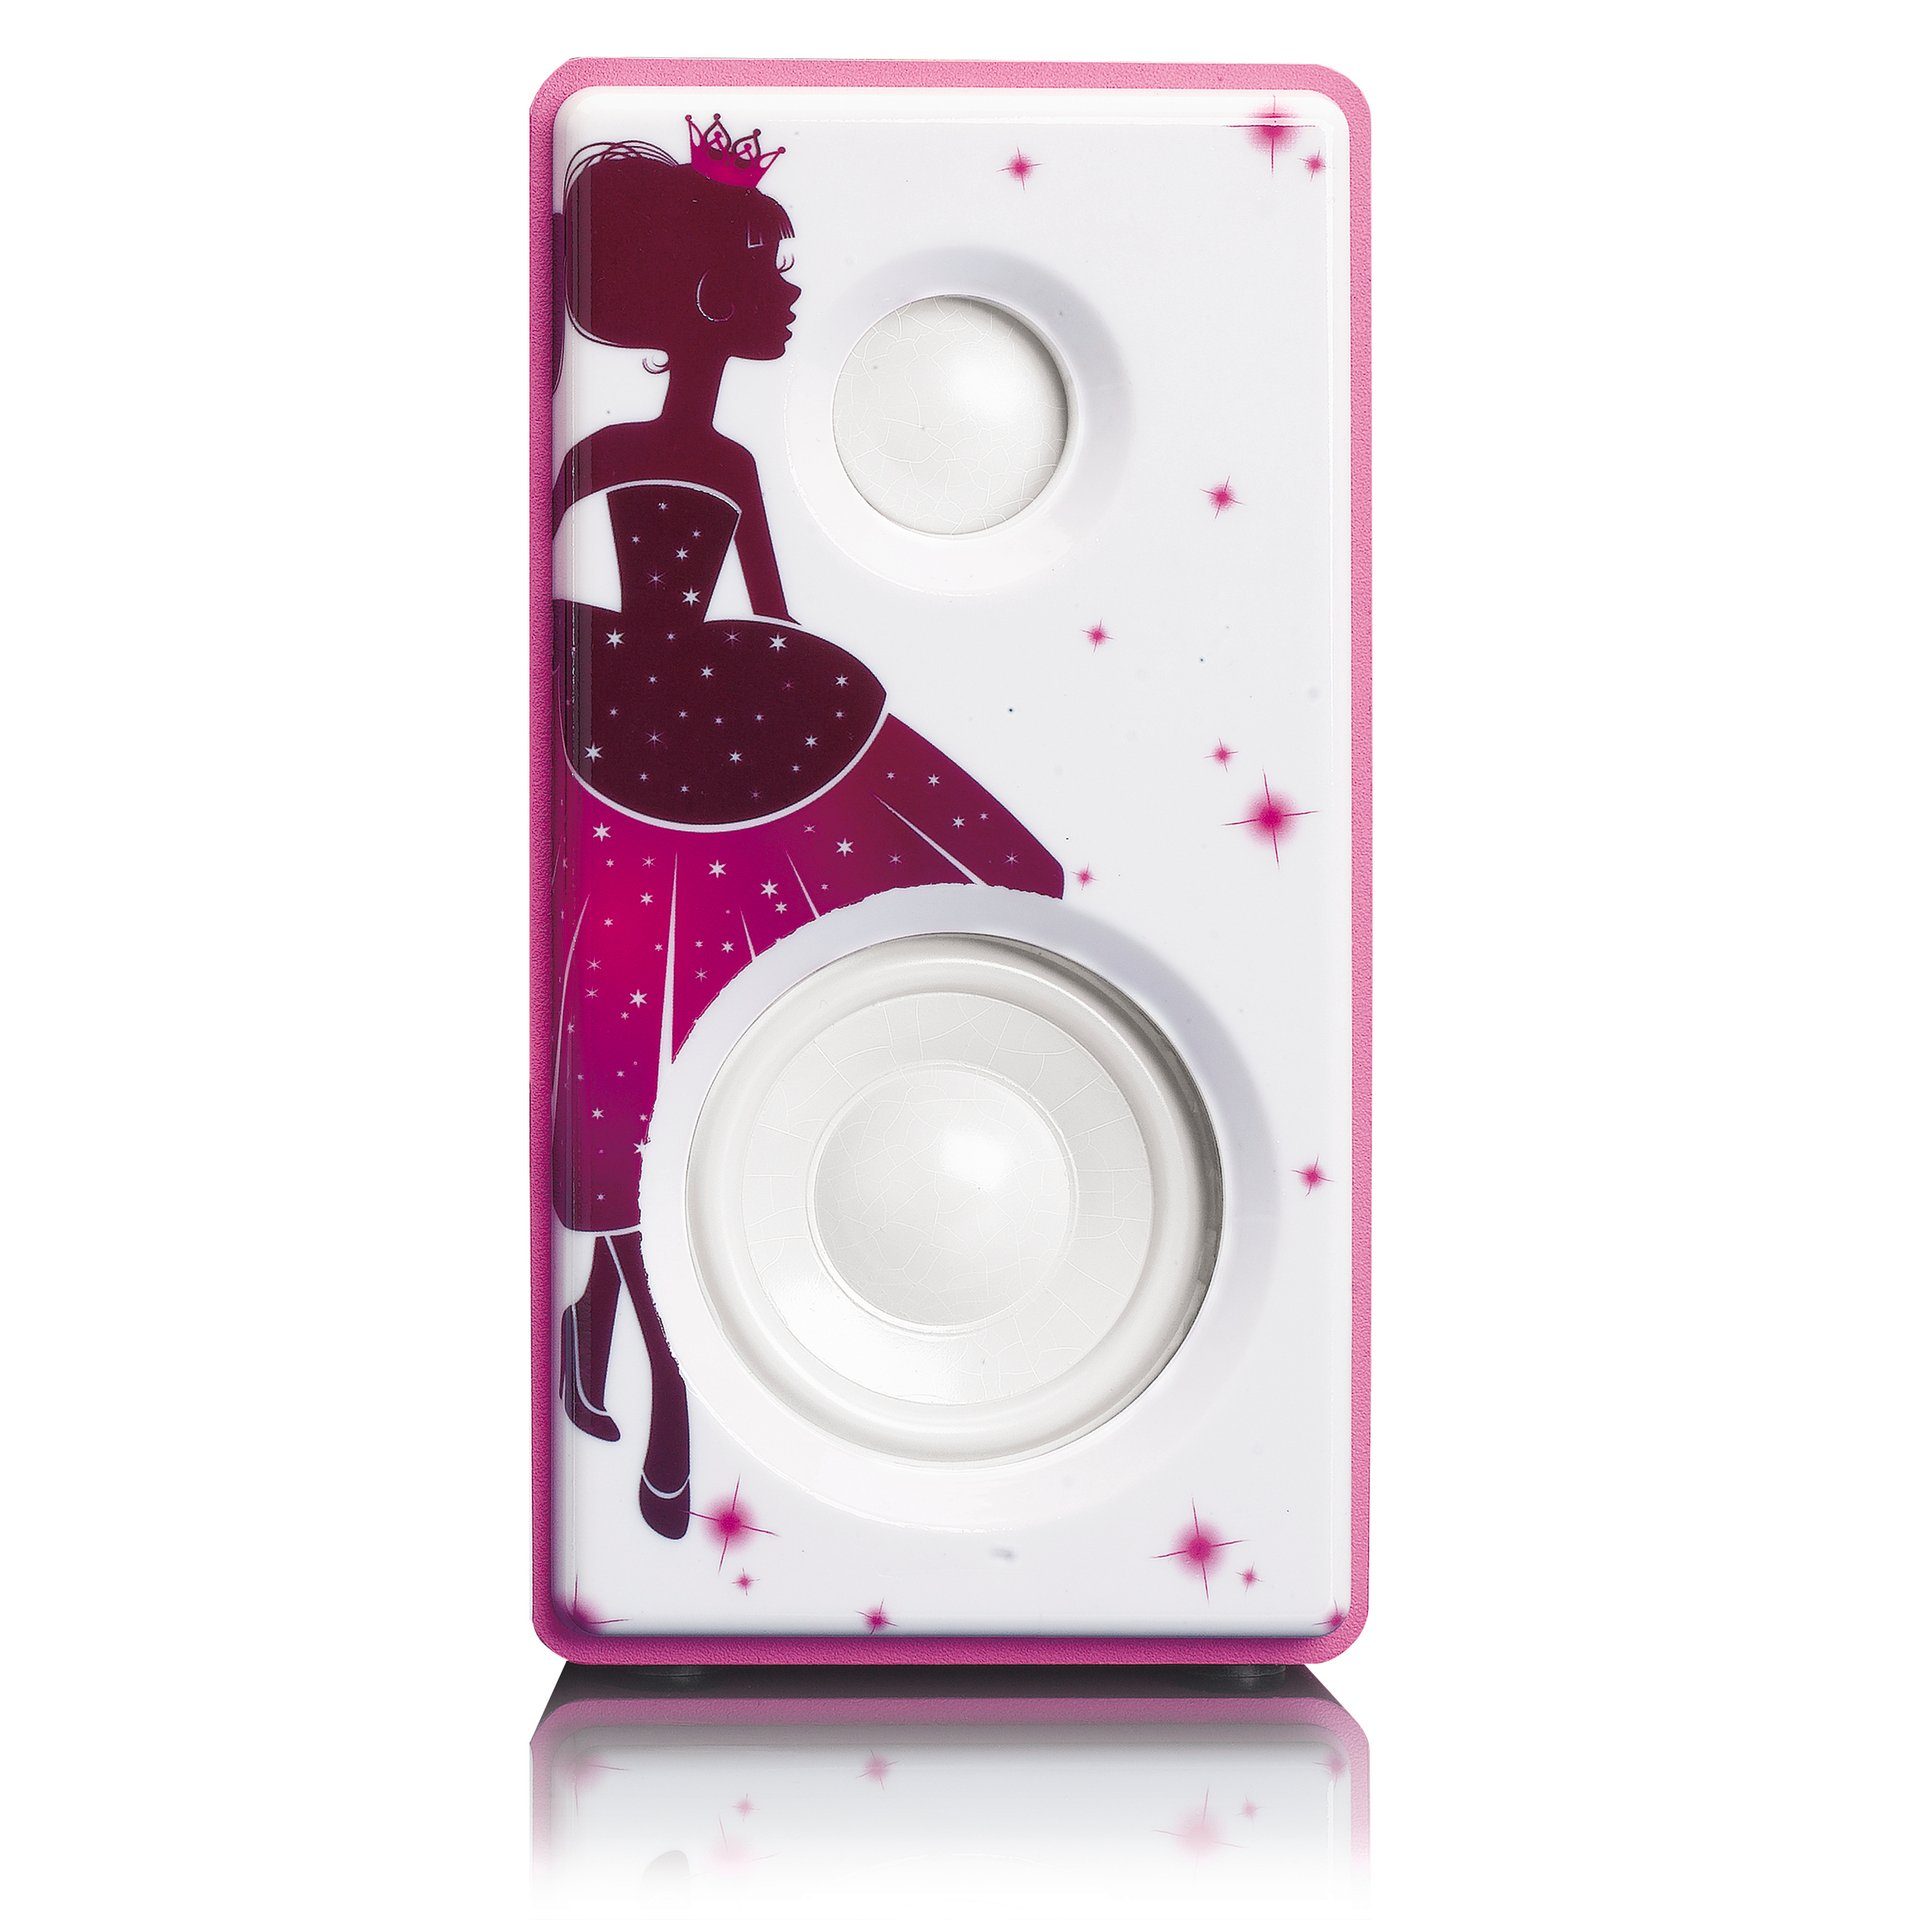 Lenco Bluetooth MC-020 Mikro-Stereoanlage Pink;Weiß mit und FM-Radio W) Microanlage 5 (FM-Tuner,